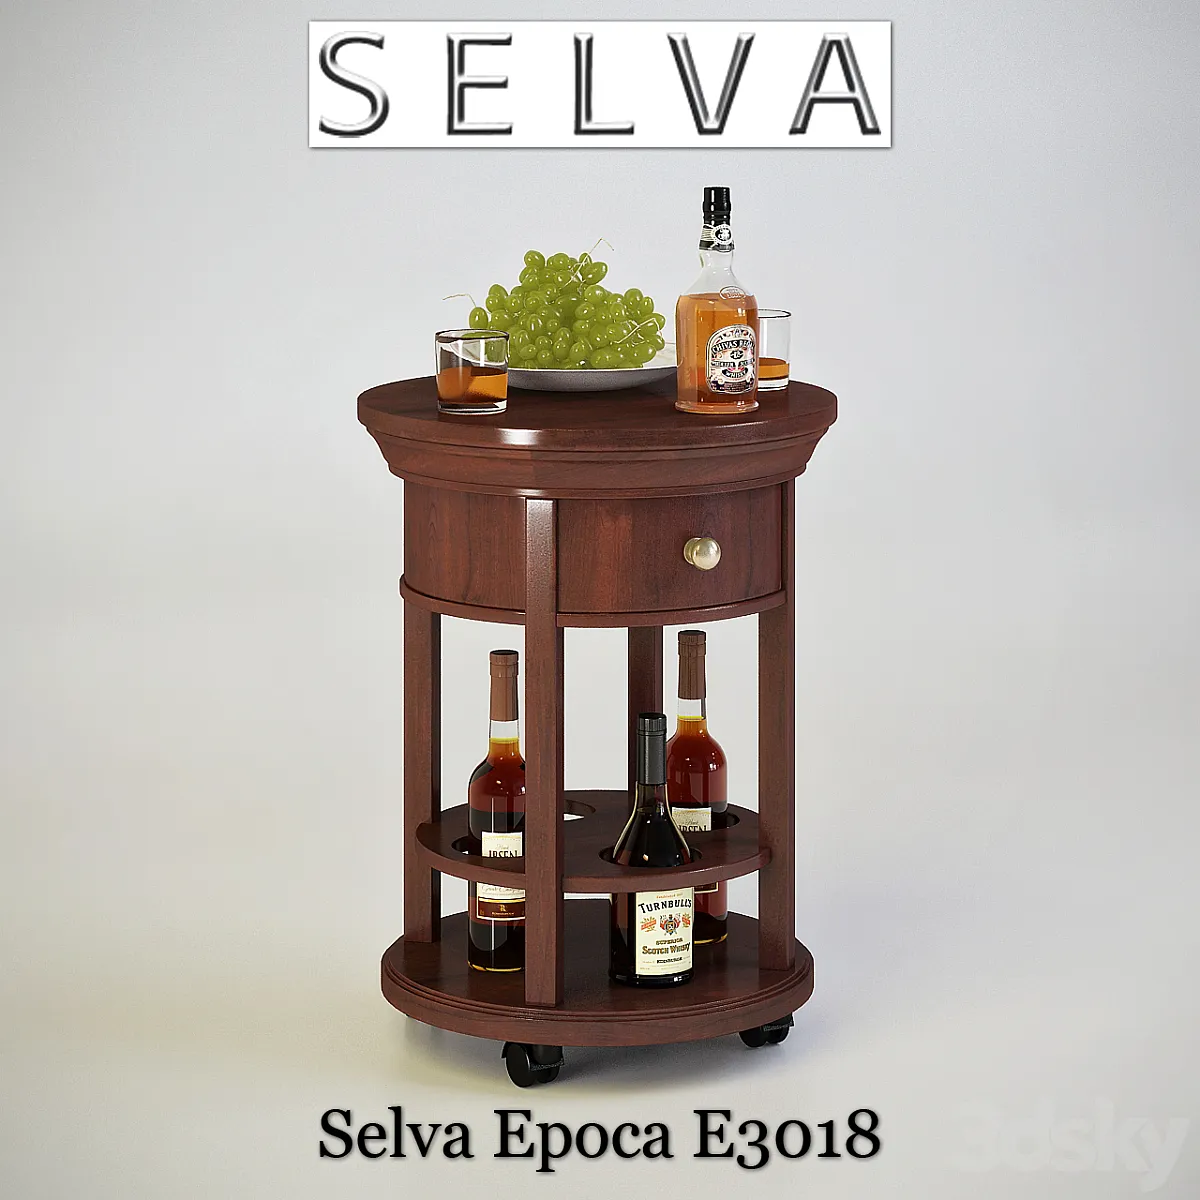 دانلود 3dsky - Selva Epoca E3018 minibar